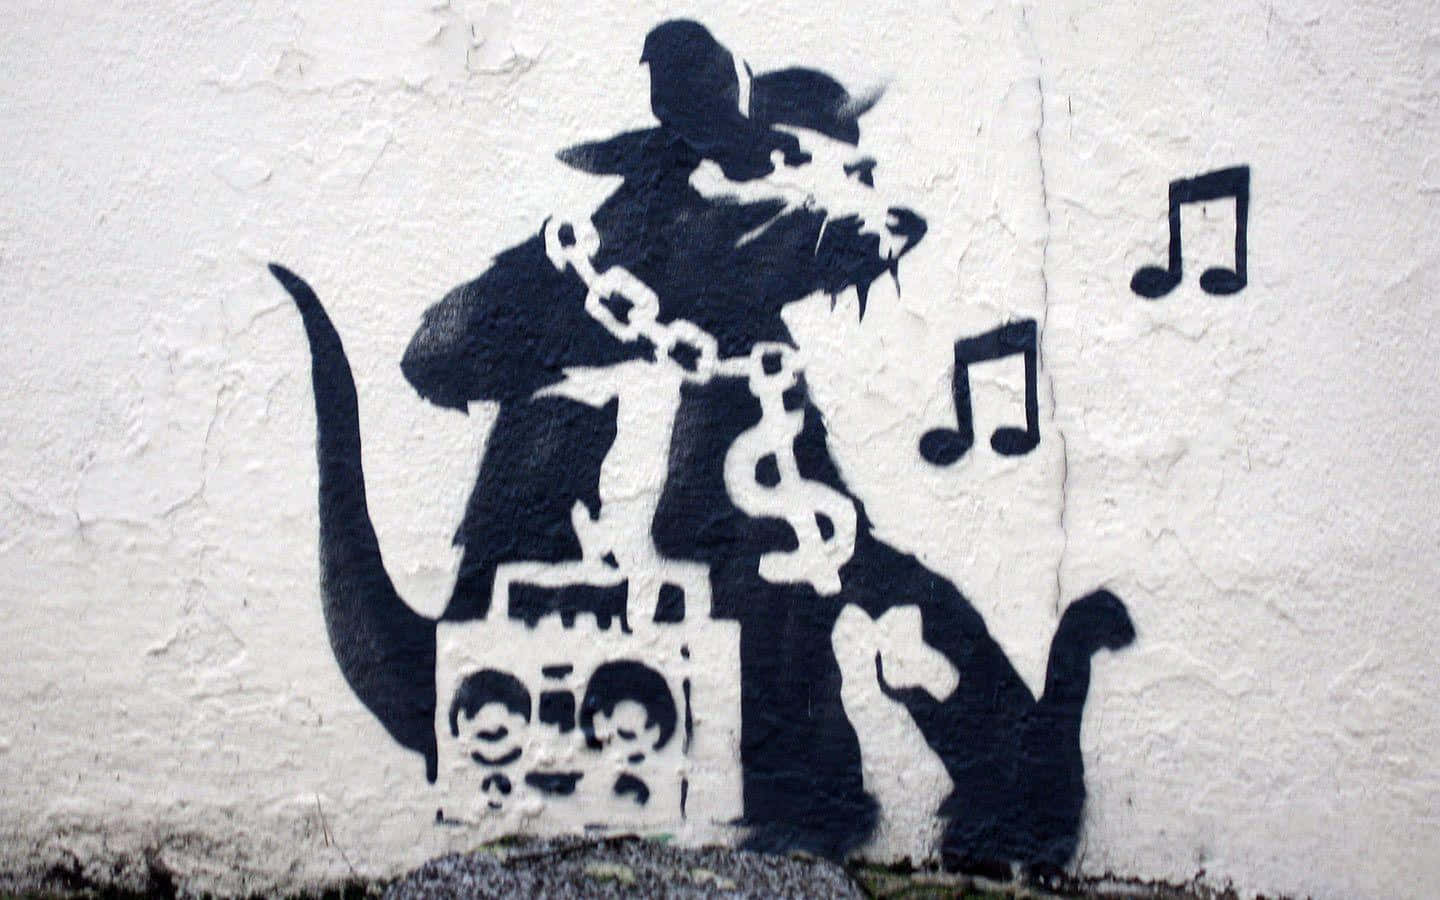 Banksy's graffiti art